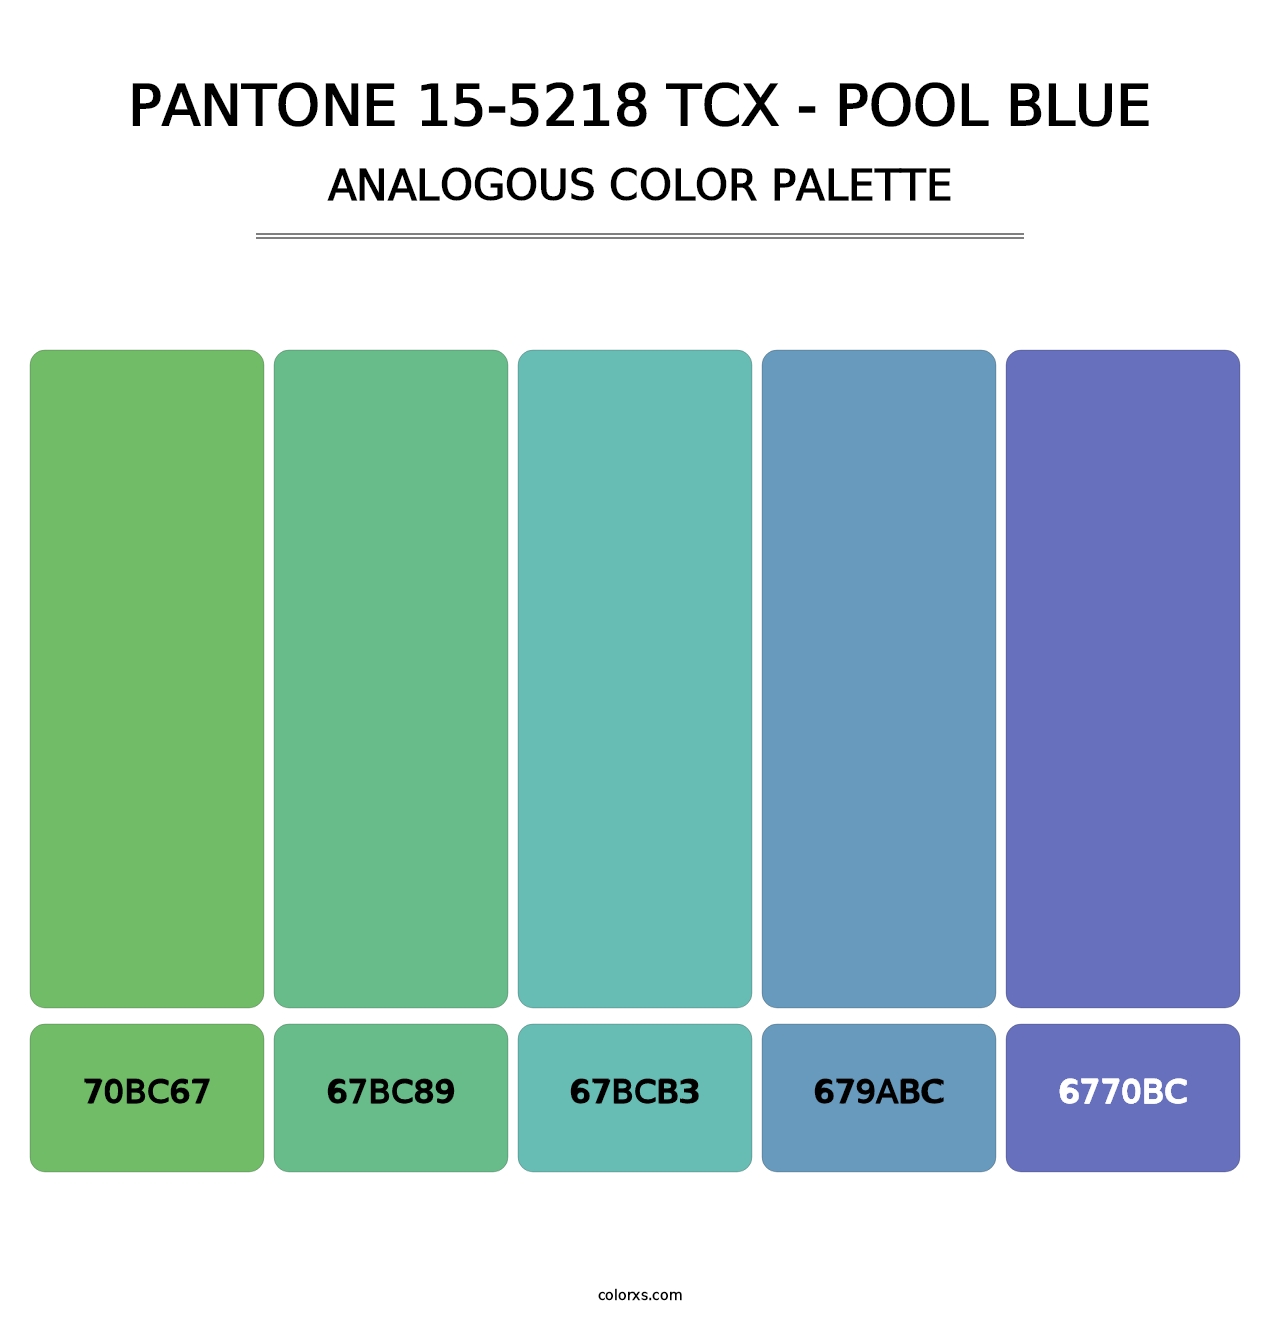 PANTONE 15-5218 TCX - Pool Blue - Analogous Color Palette